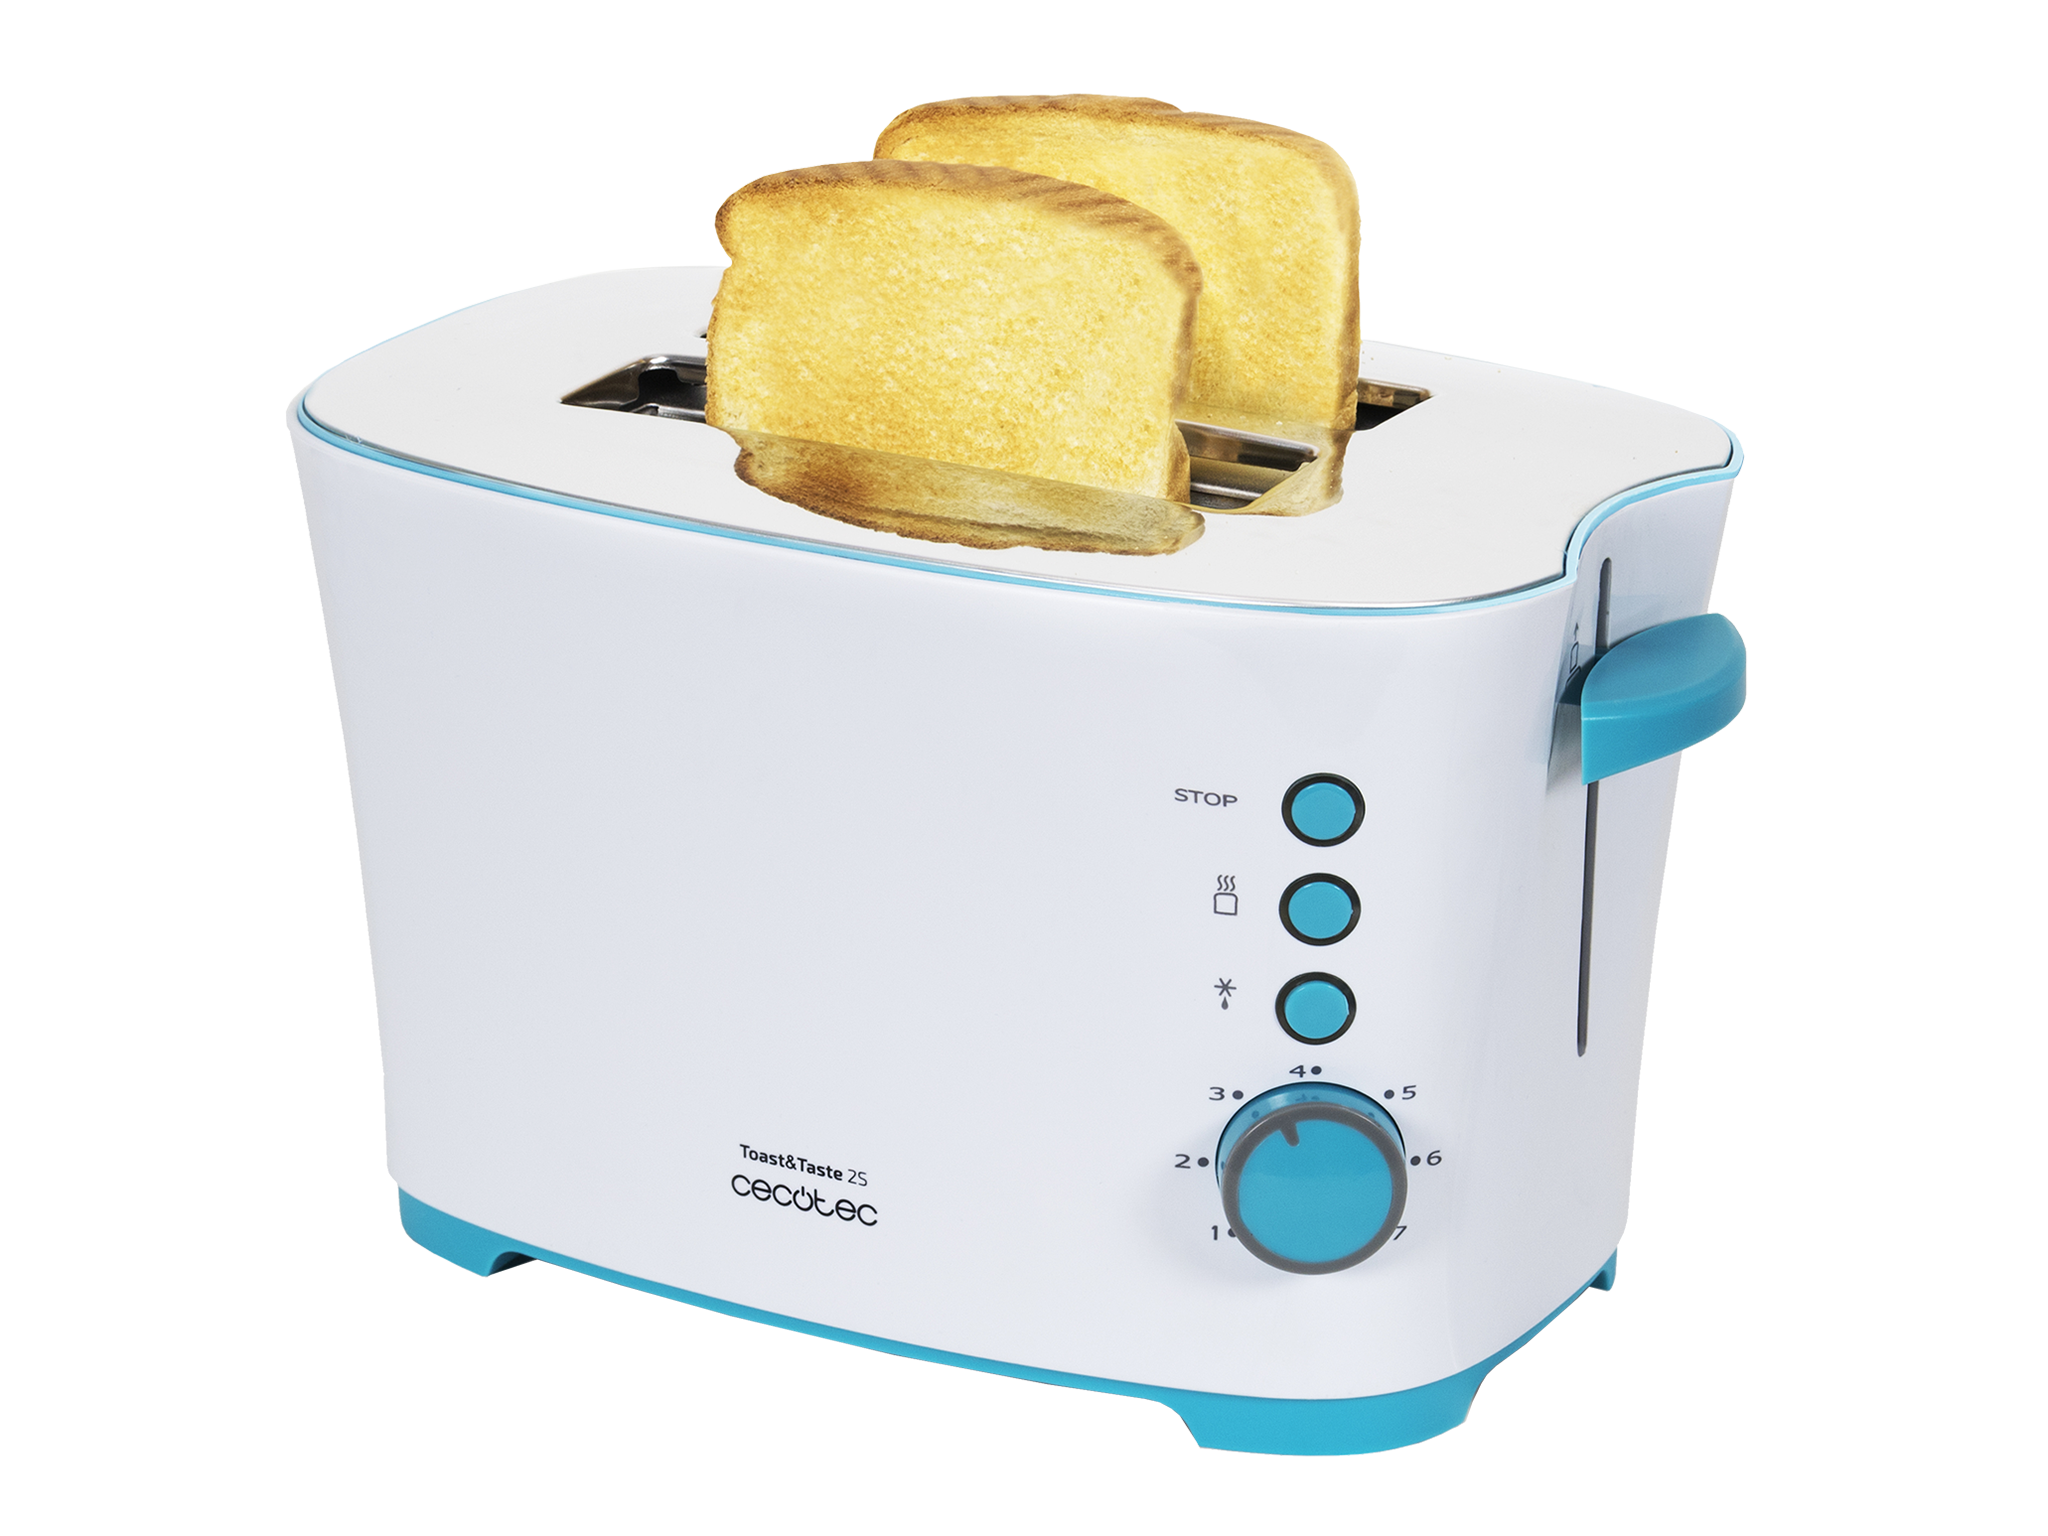 Toast&Taste 2S - Grille-pain, 7 niveaux de puissance, capacité pour 2 toasts, 3 fonctions (Griller, Réchauffer, Décongeler), pinces, plateau ramasse-miettes et 650 W